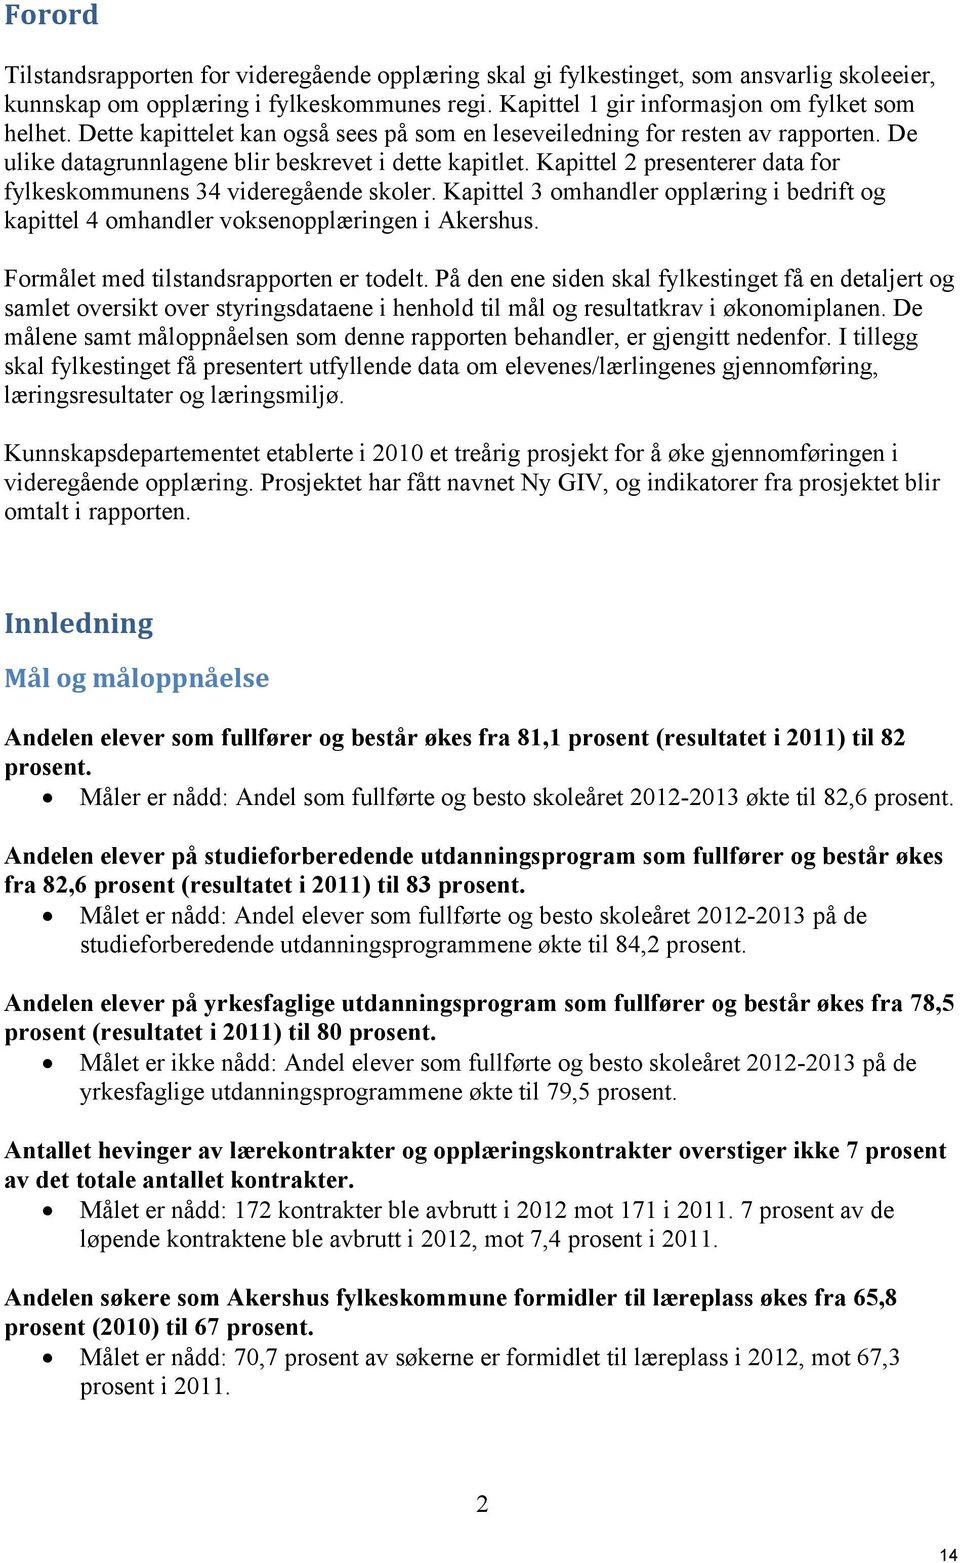 Kapittel 2 presenterer data for fylkeskommunens 34 videregående skoler. Kapittel 3 omhandler opplæring i bedrift og kapittel 4 omhandler voksenopplæringen i Akershus.